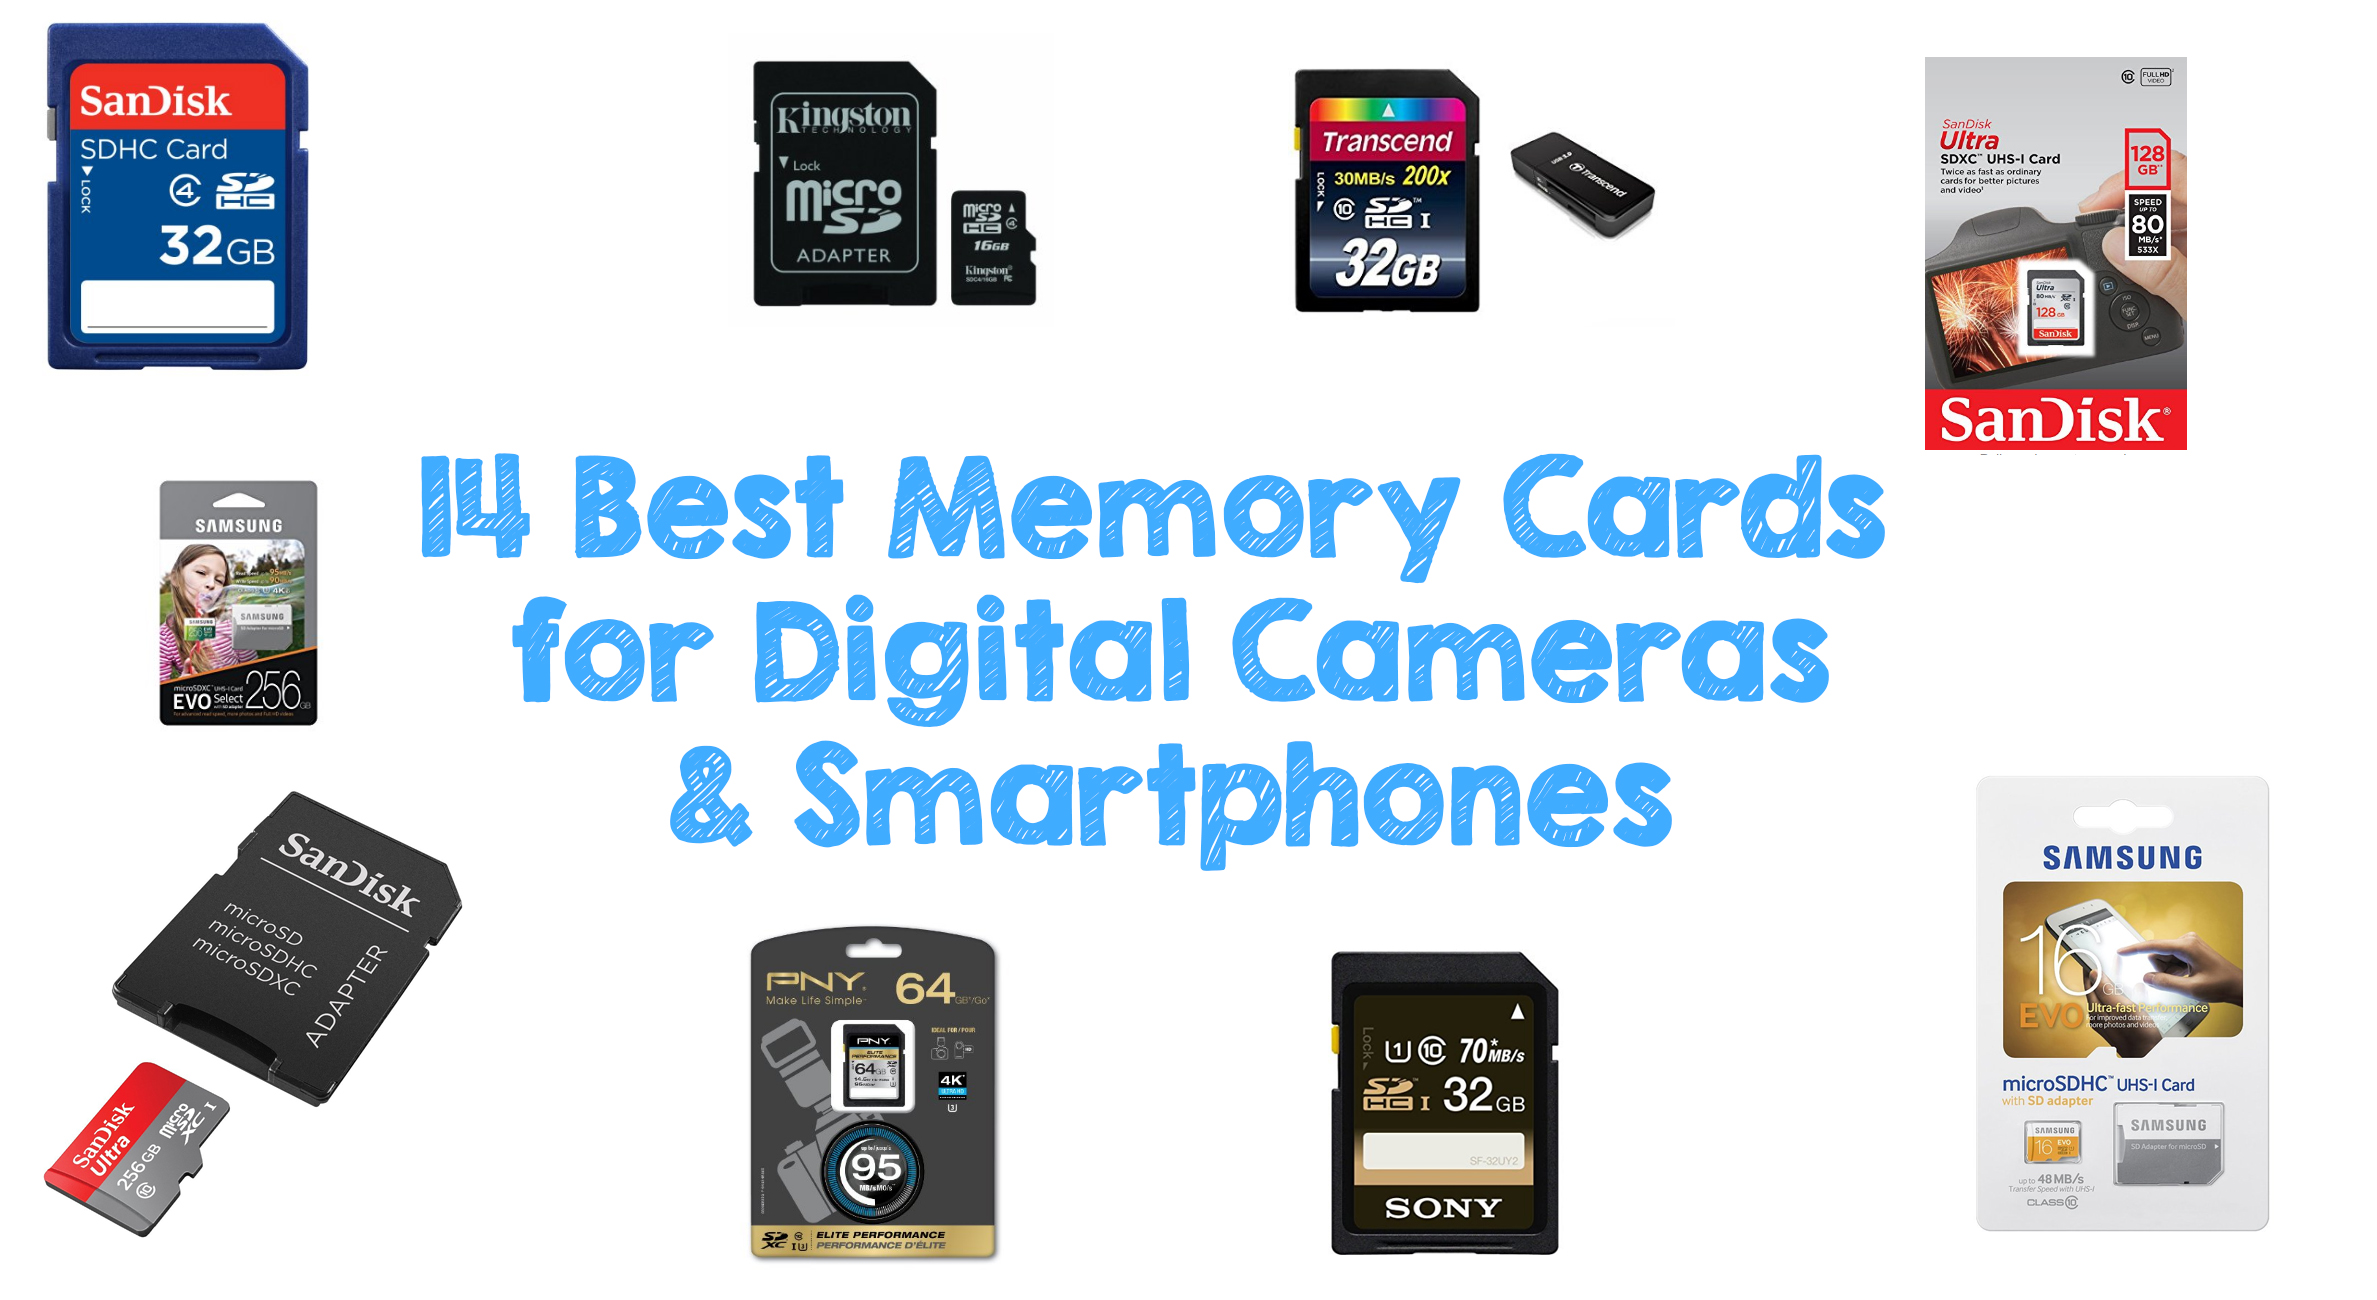 14 Best Memory Cards for Digital Cameras & Smartphones